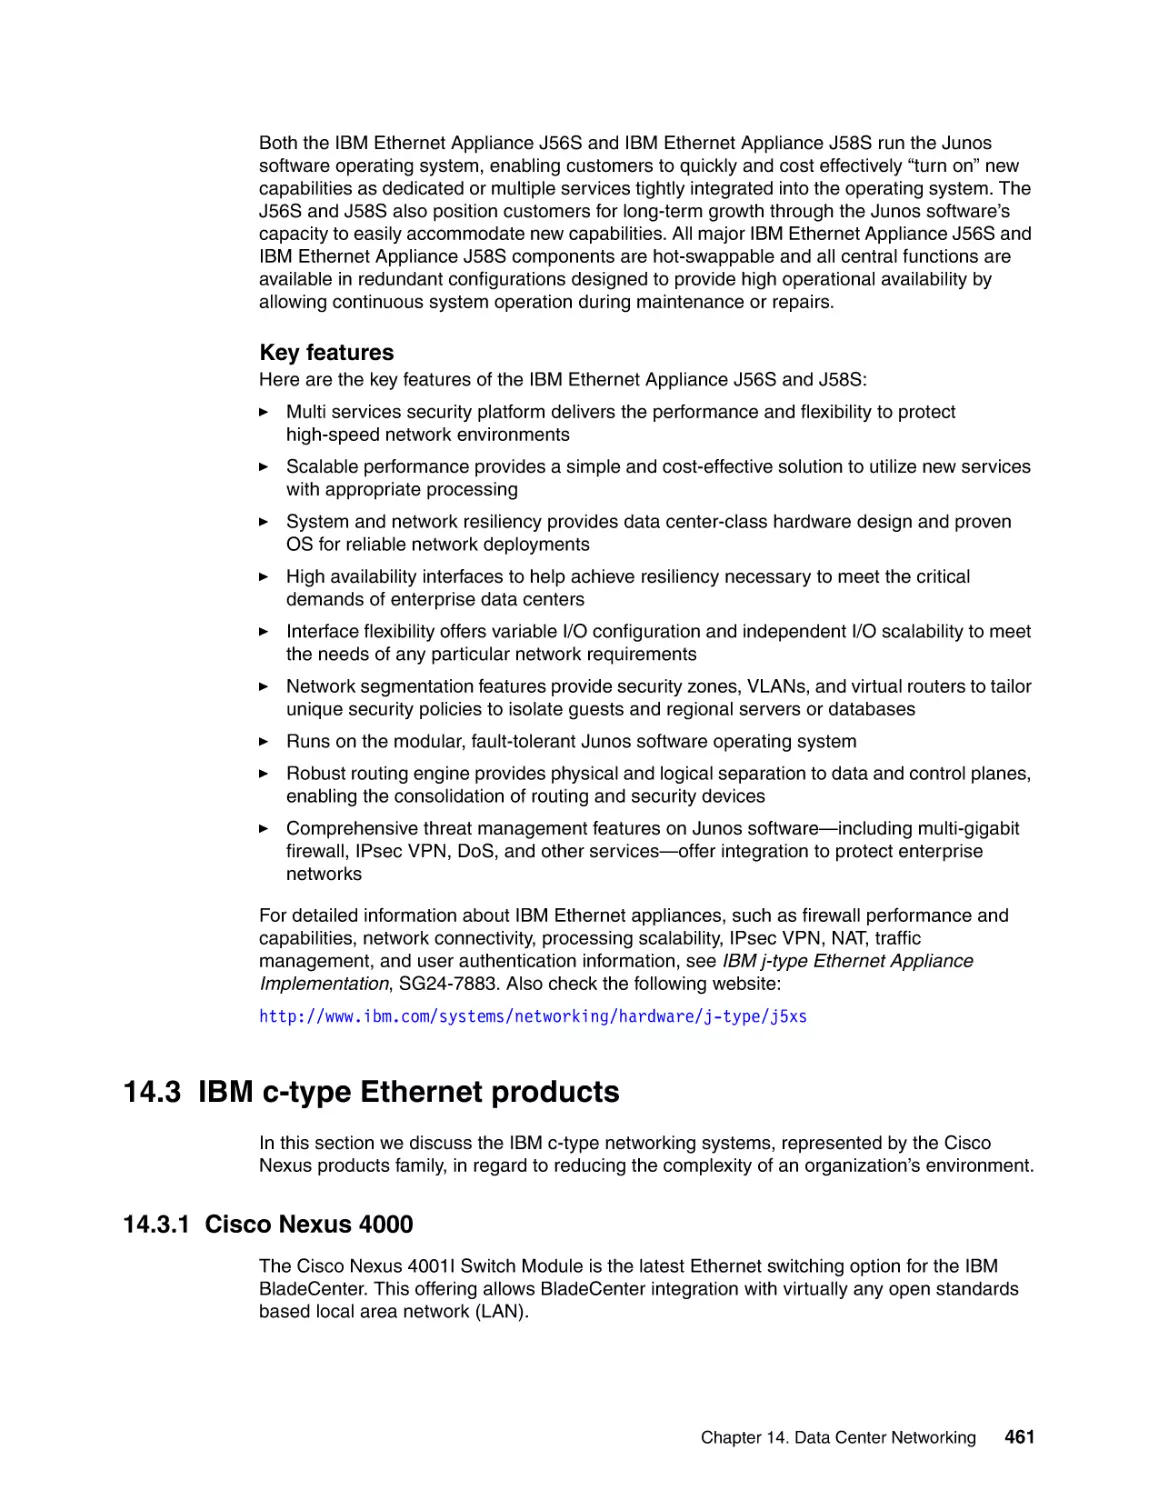 14.3 IBM c-type Ethernet products
14.3.1 Cisco Nexus 4000